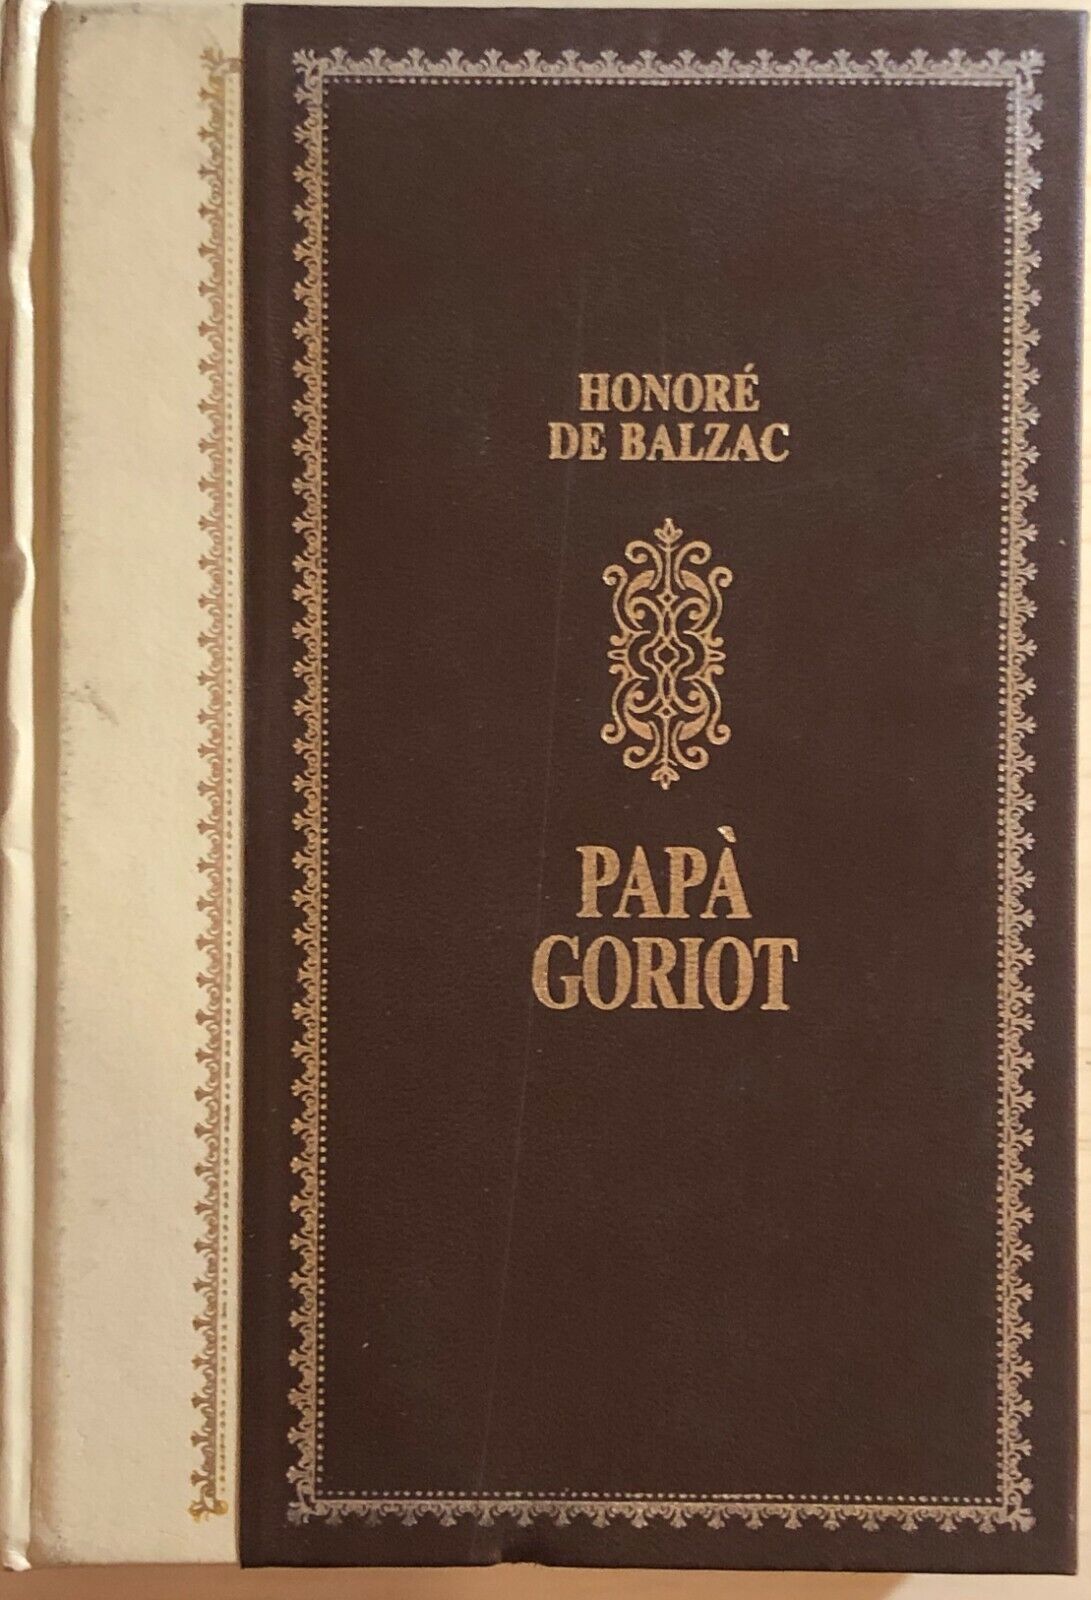 Pap? Goriot di Honor? De Balzac, 1985, Alberto Peruzzo Editore